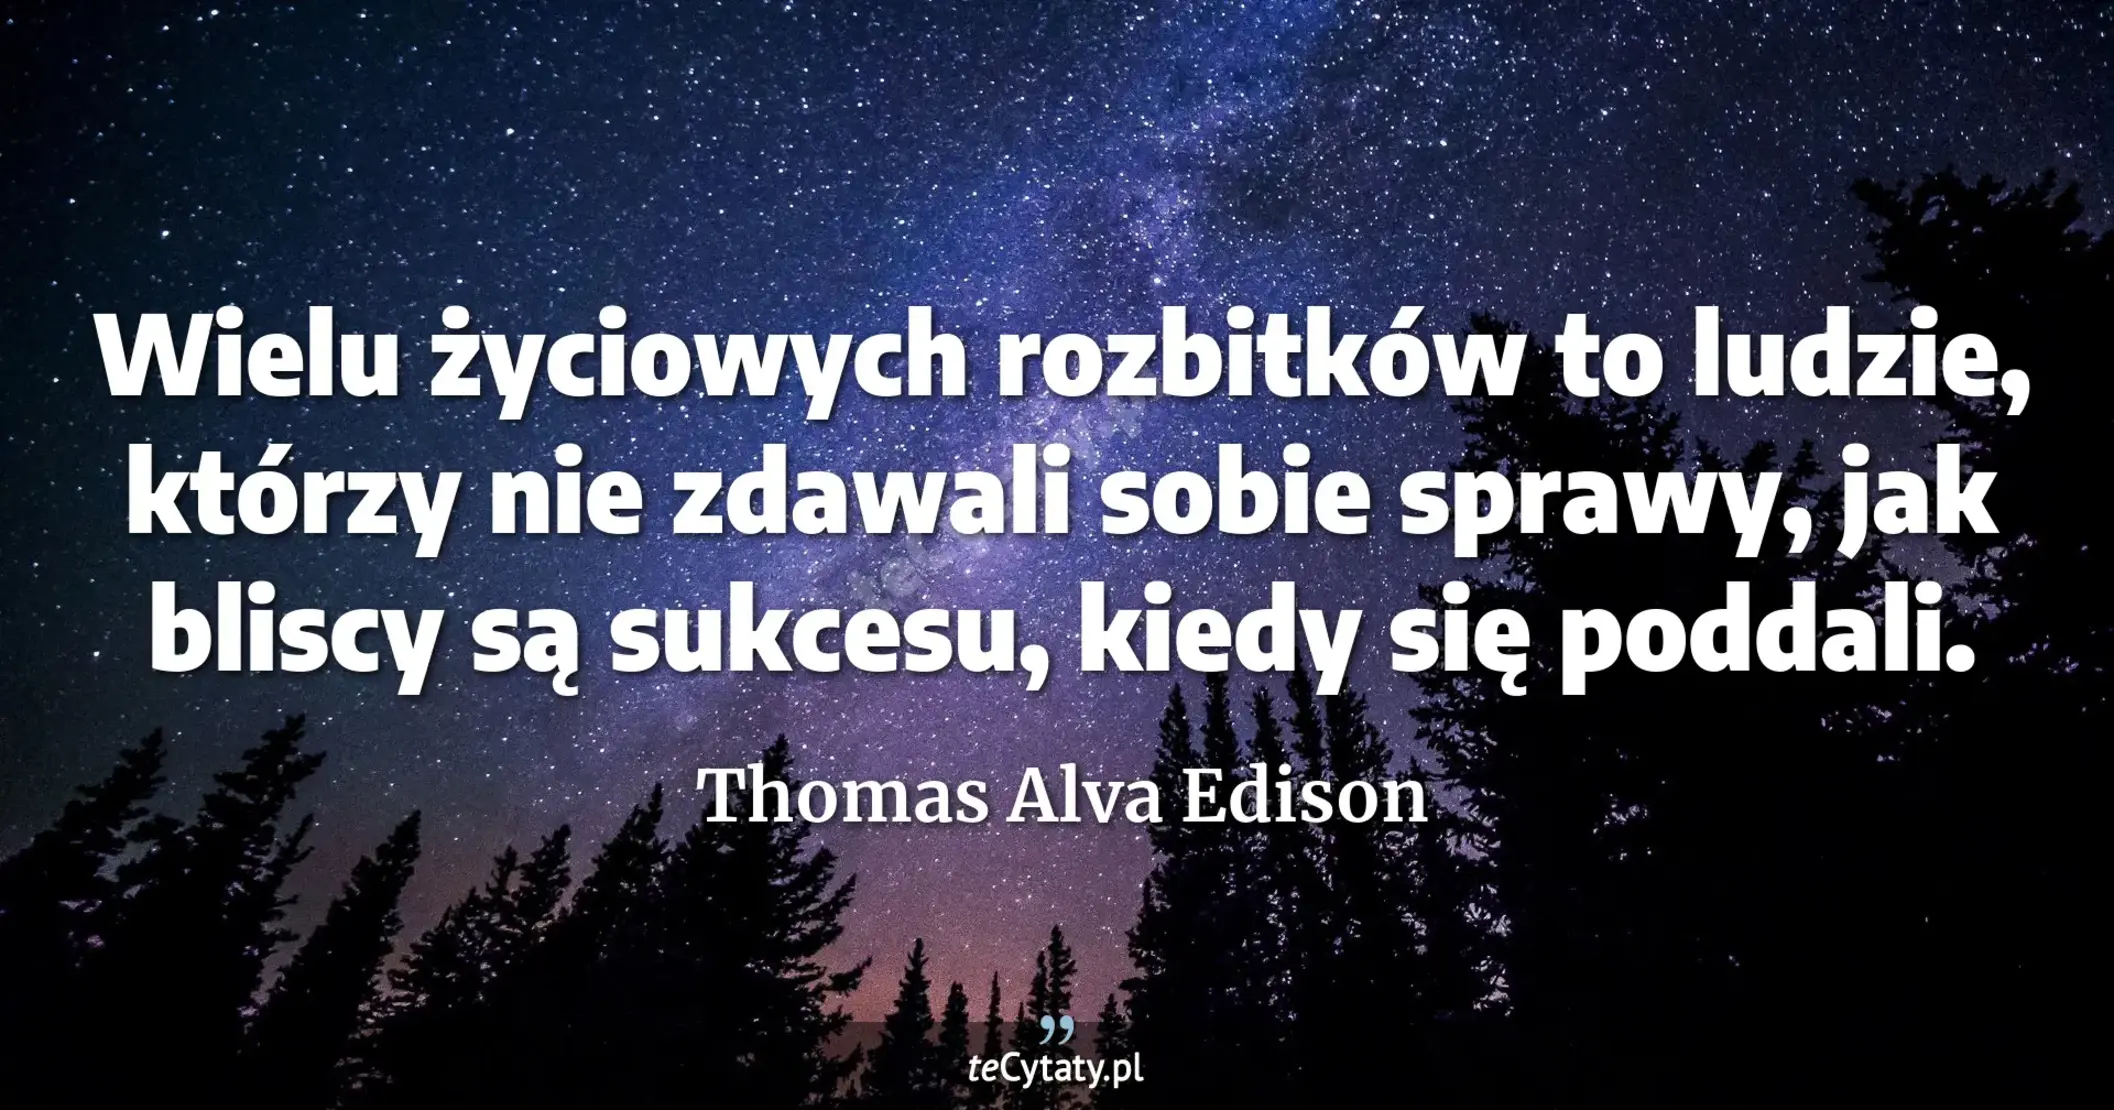 Wielu życiowych rozbitków to ludzie, którzy nie zdawali sobie sprawy, jak bliscy są sukcesu, kiedy się poddali. - Thomas Alva Edison